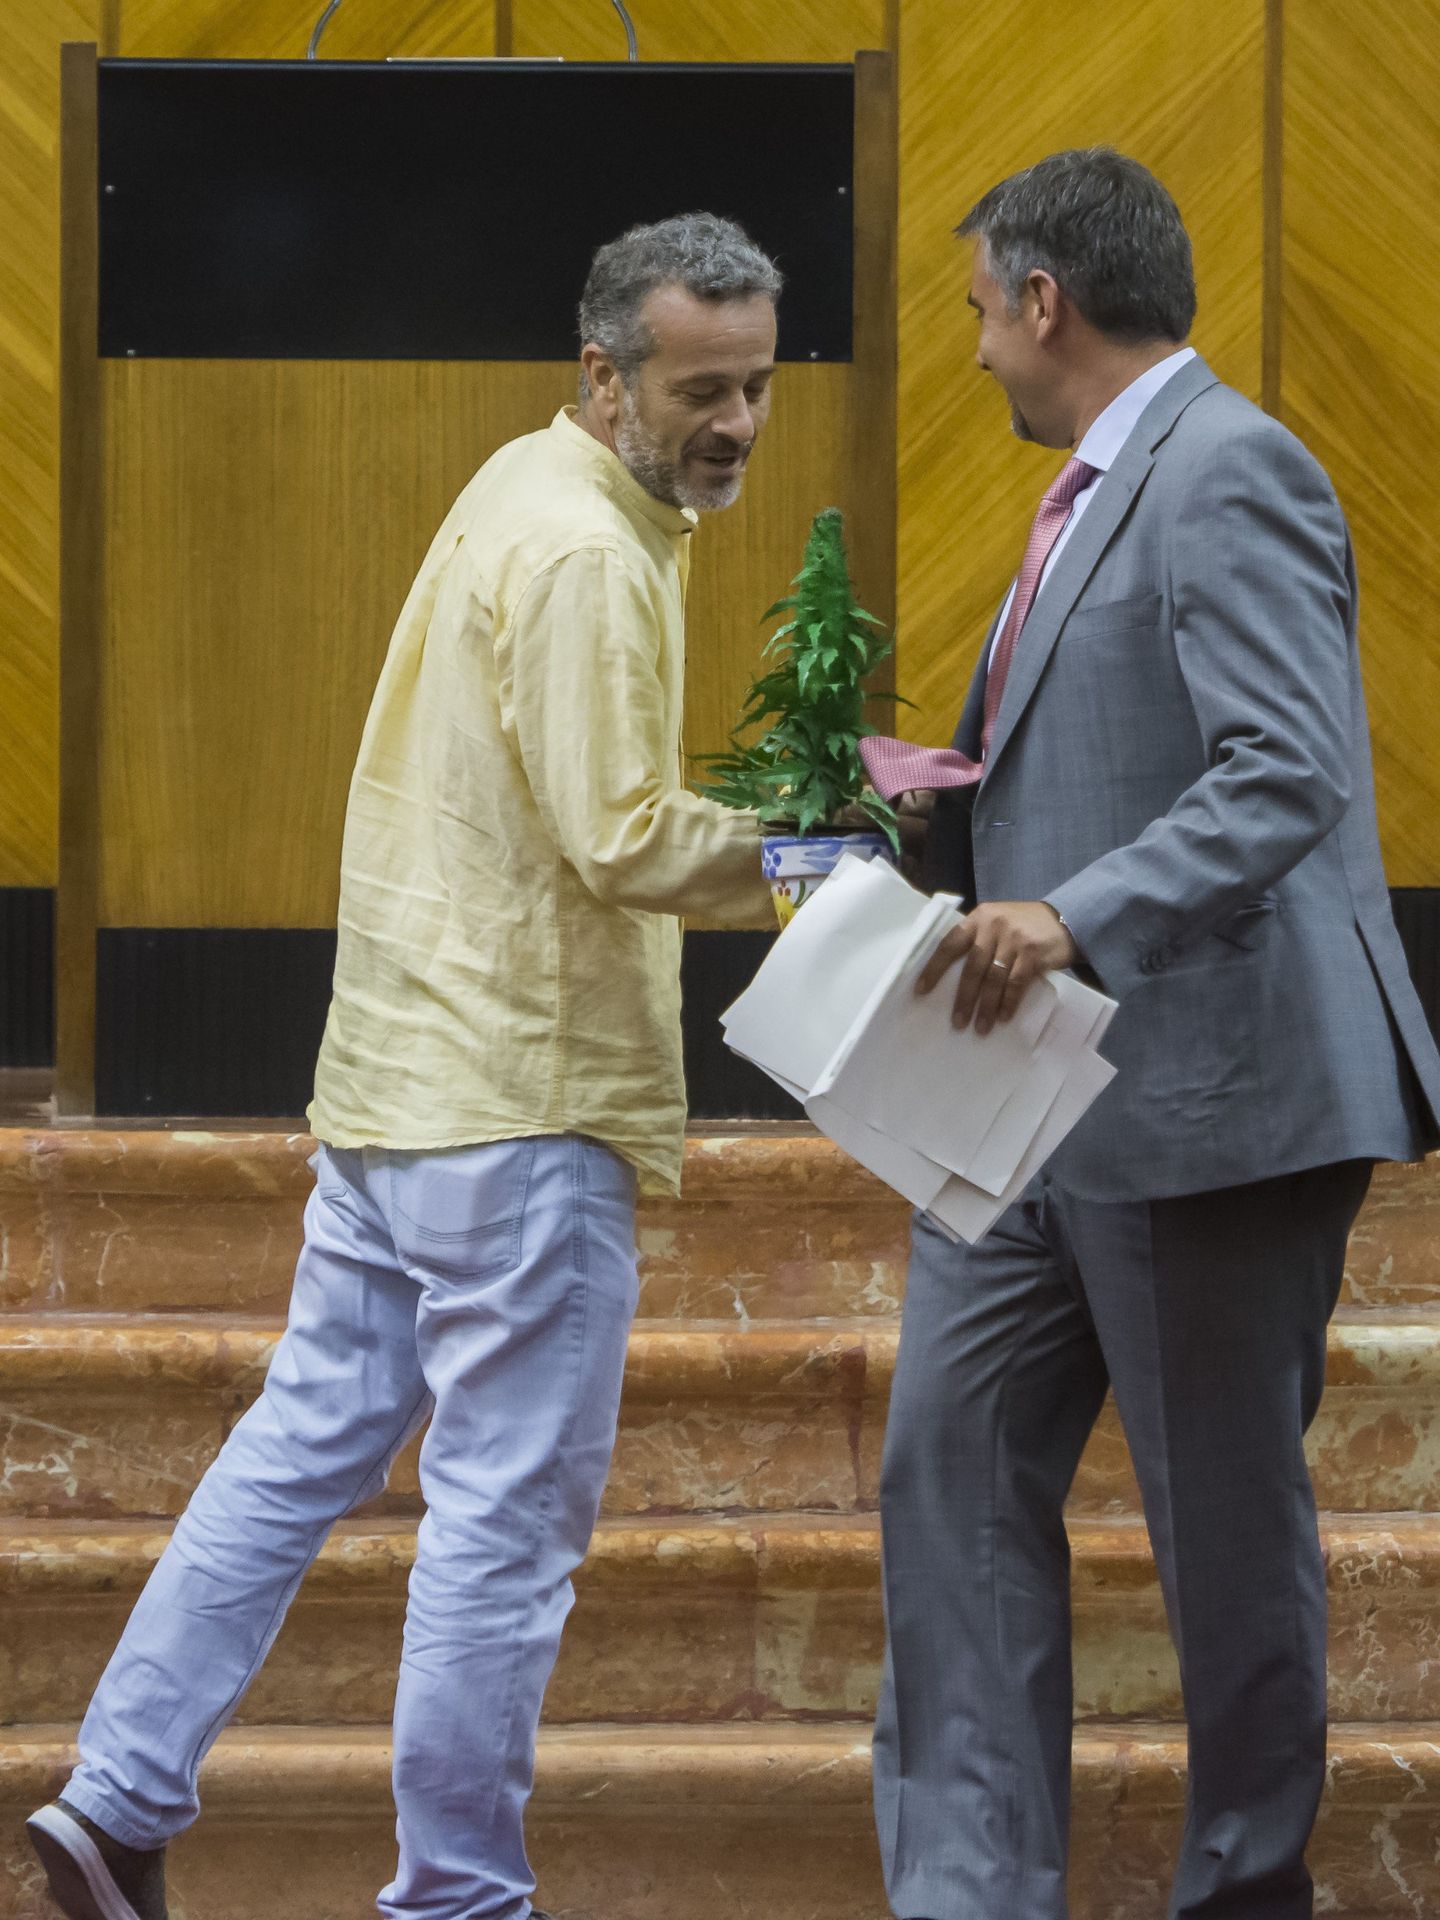 Los exdiputados andaluces José Antonio Castro y Juan Moreno Yagüe, con una planta de marihuana (de plástico) en un debate en el Parlamento andaluz.